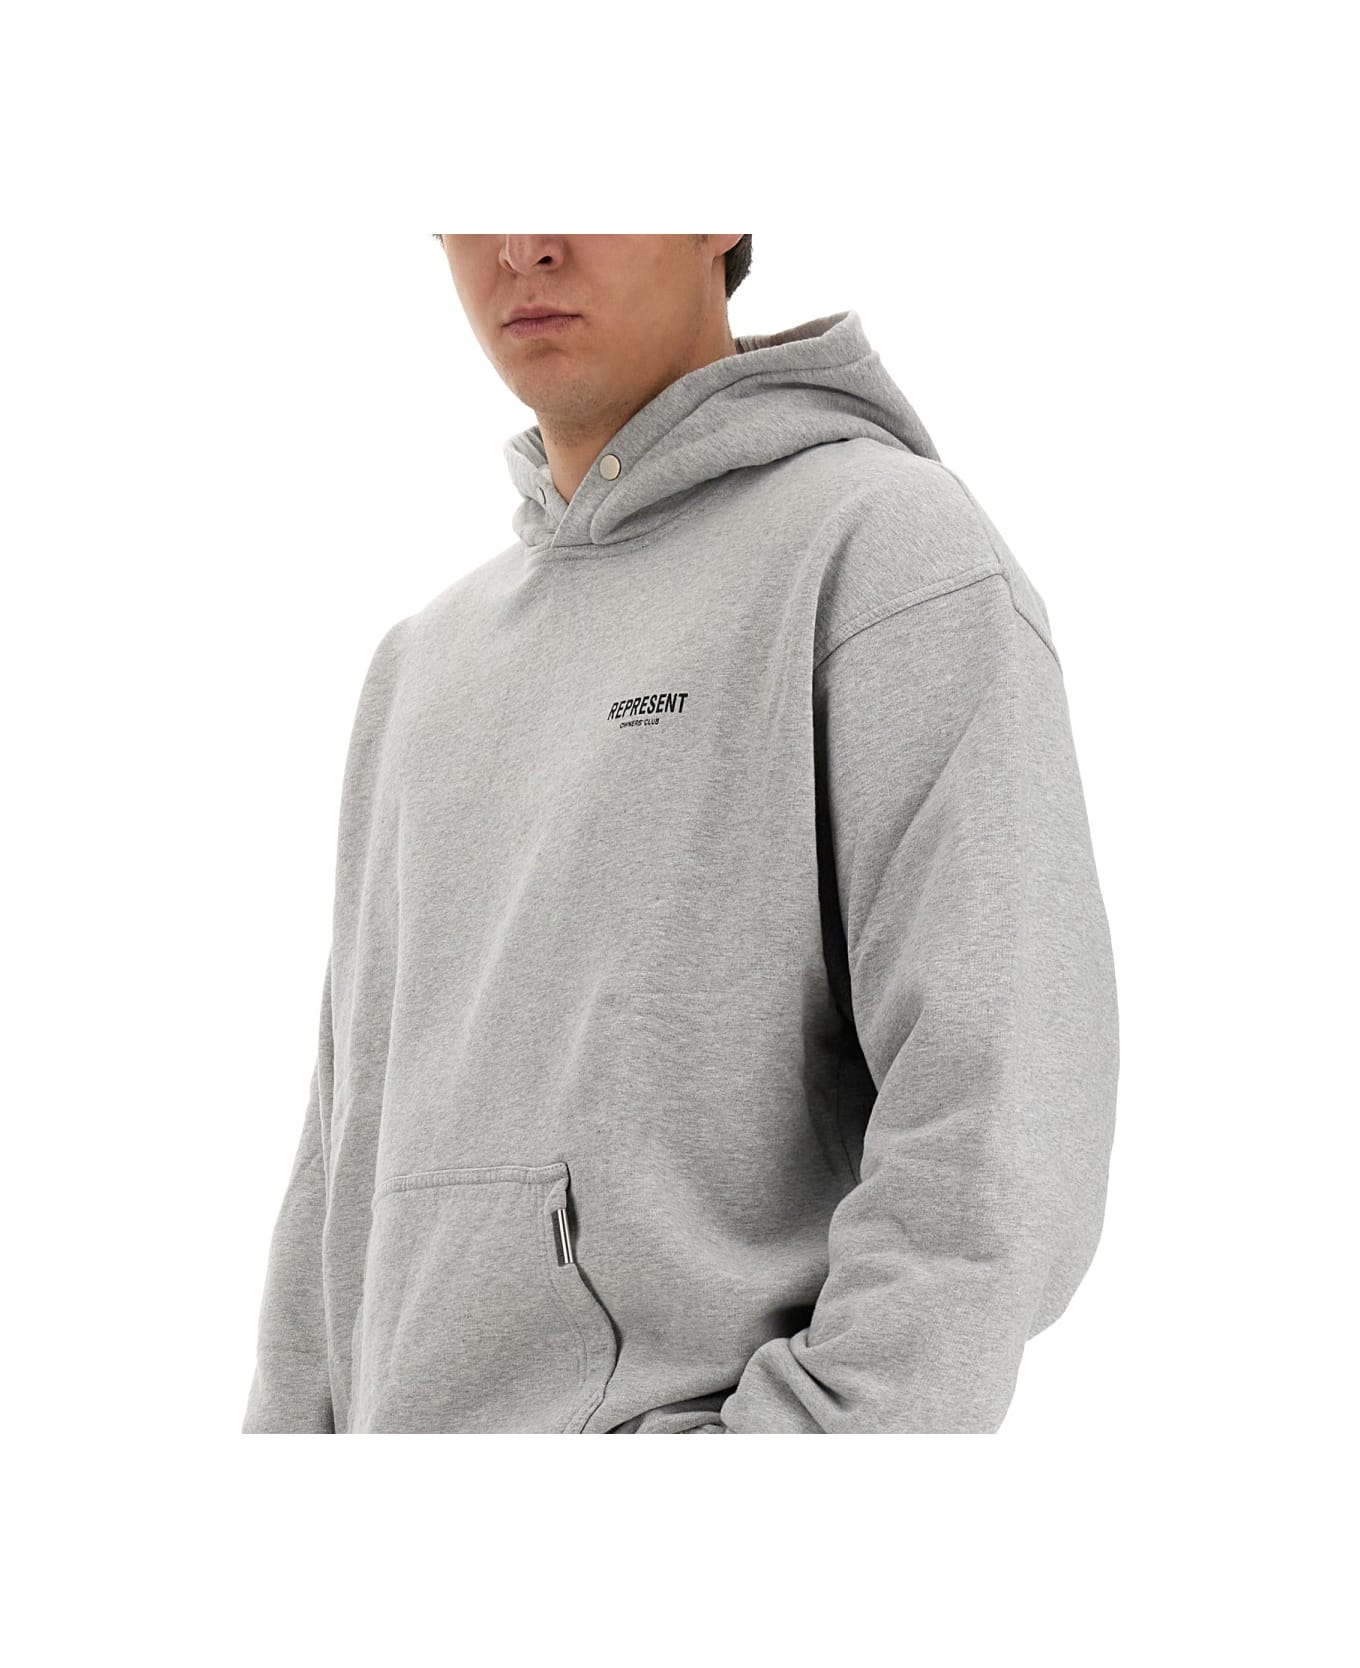 REPRESENT Sweatshirt With Logo - Ash Grey Blk